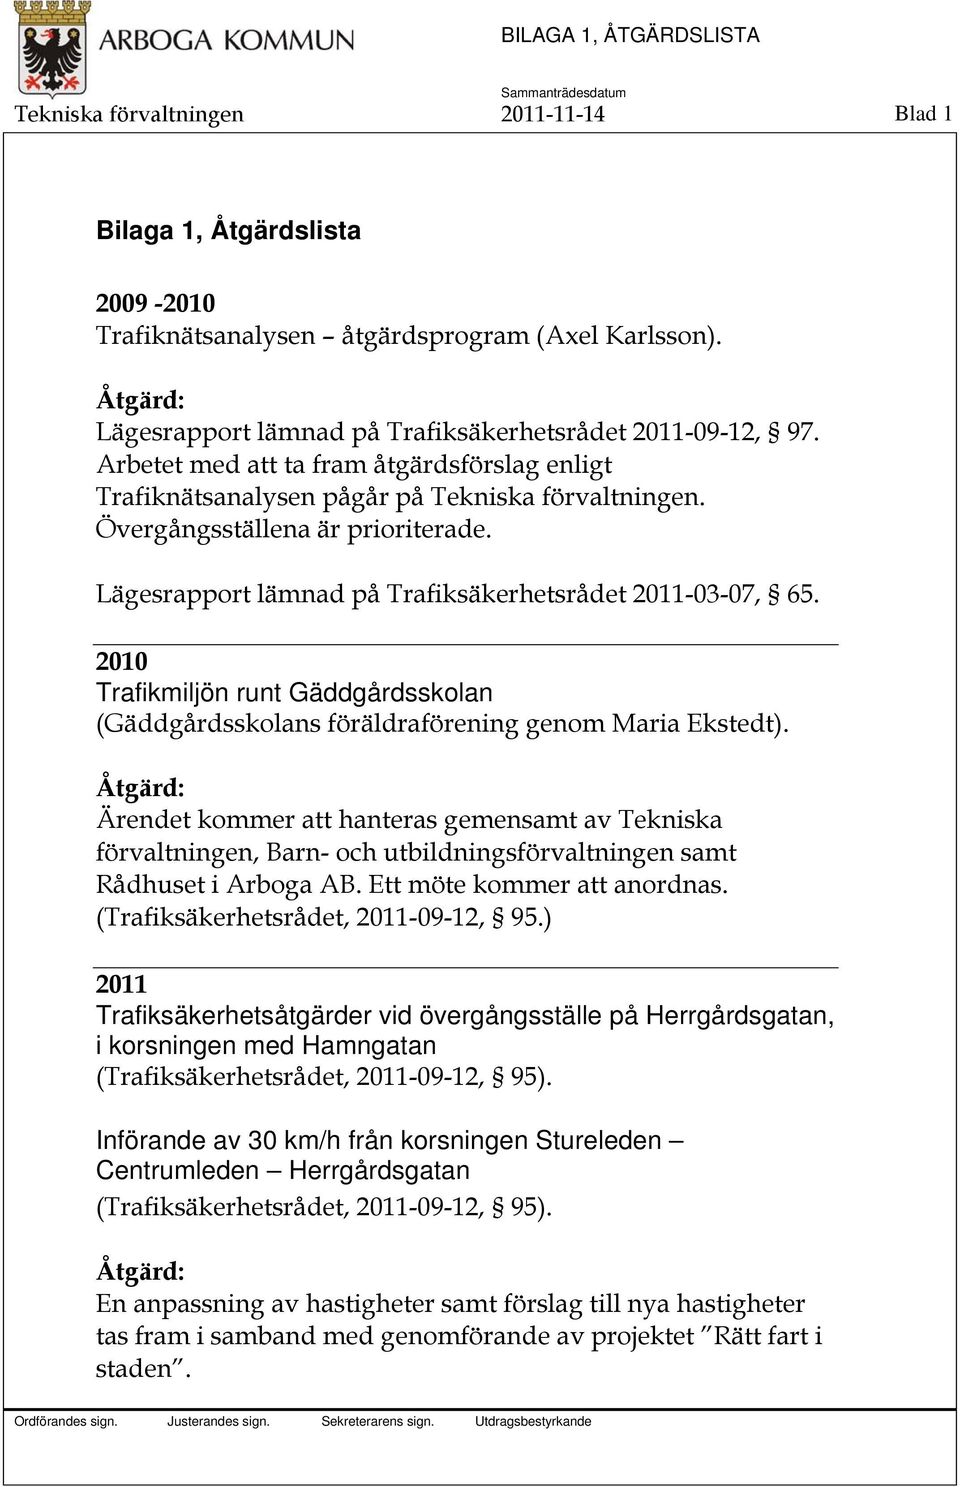 Lägesrapport lämnad på Trafiksäkerhetsrådet 2011-03-07, 65. 2010 Trafikmiljön runt Gäddgårdsskolan (Gäddgårdsskolans föräldraförening genom Maria Ekstedt).